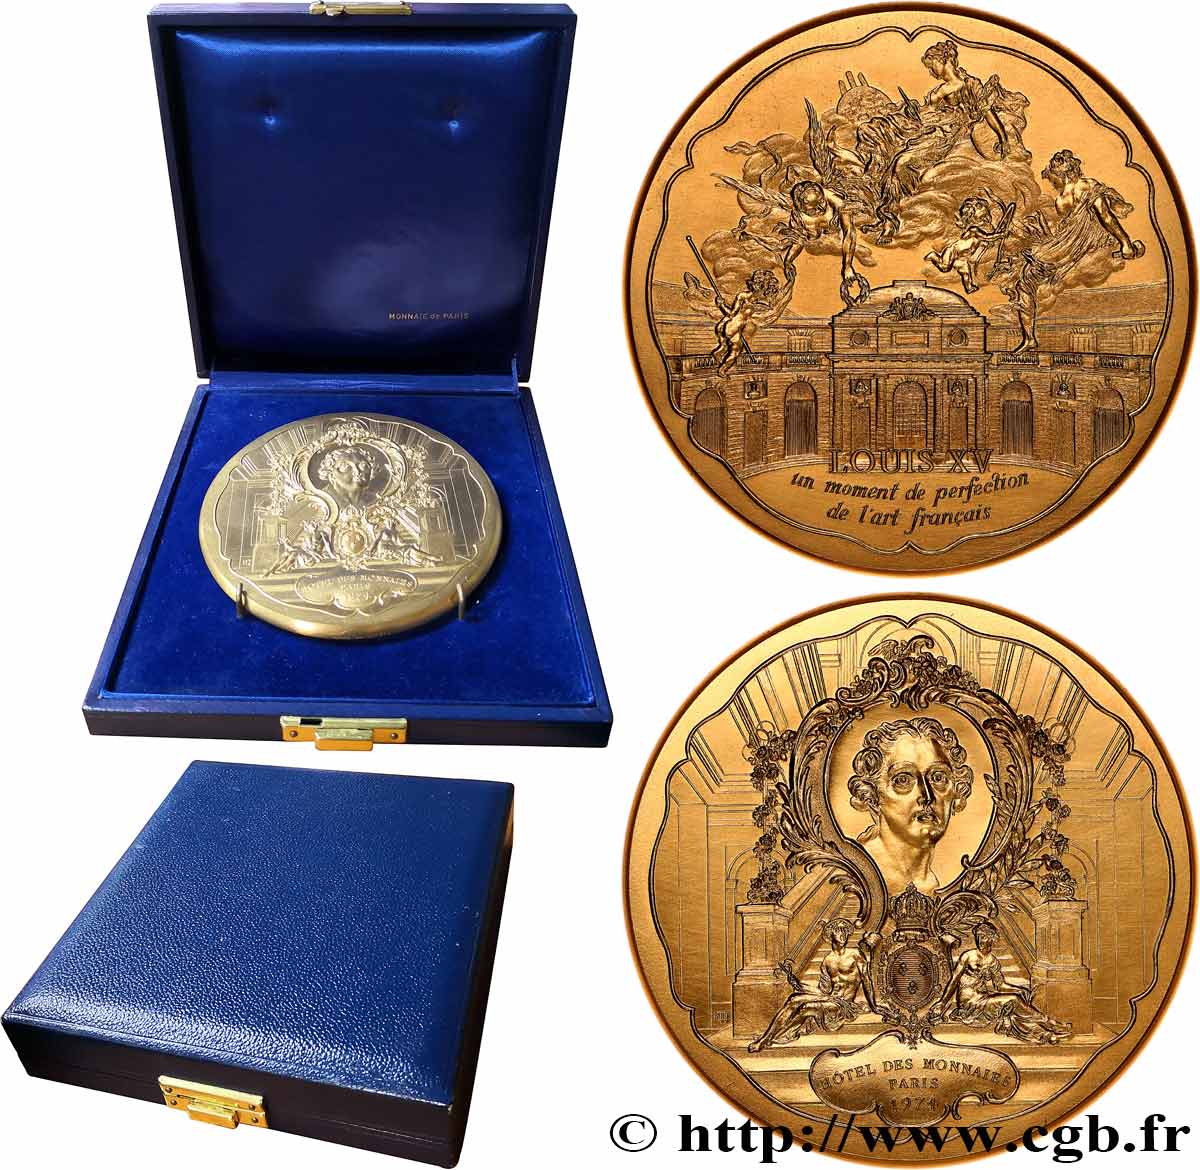 QUINTA REPUBBLICA FRANCESE Médaille, Louis XV, un moment de perfection de l’art français MS